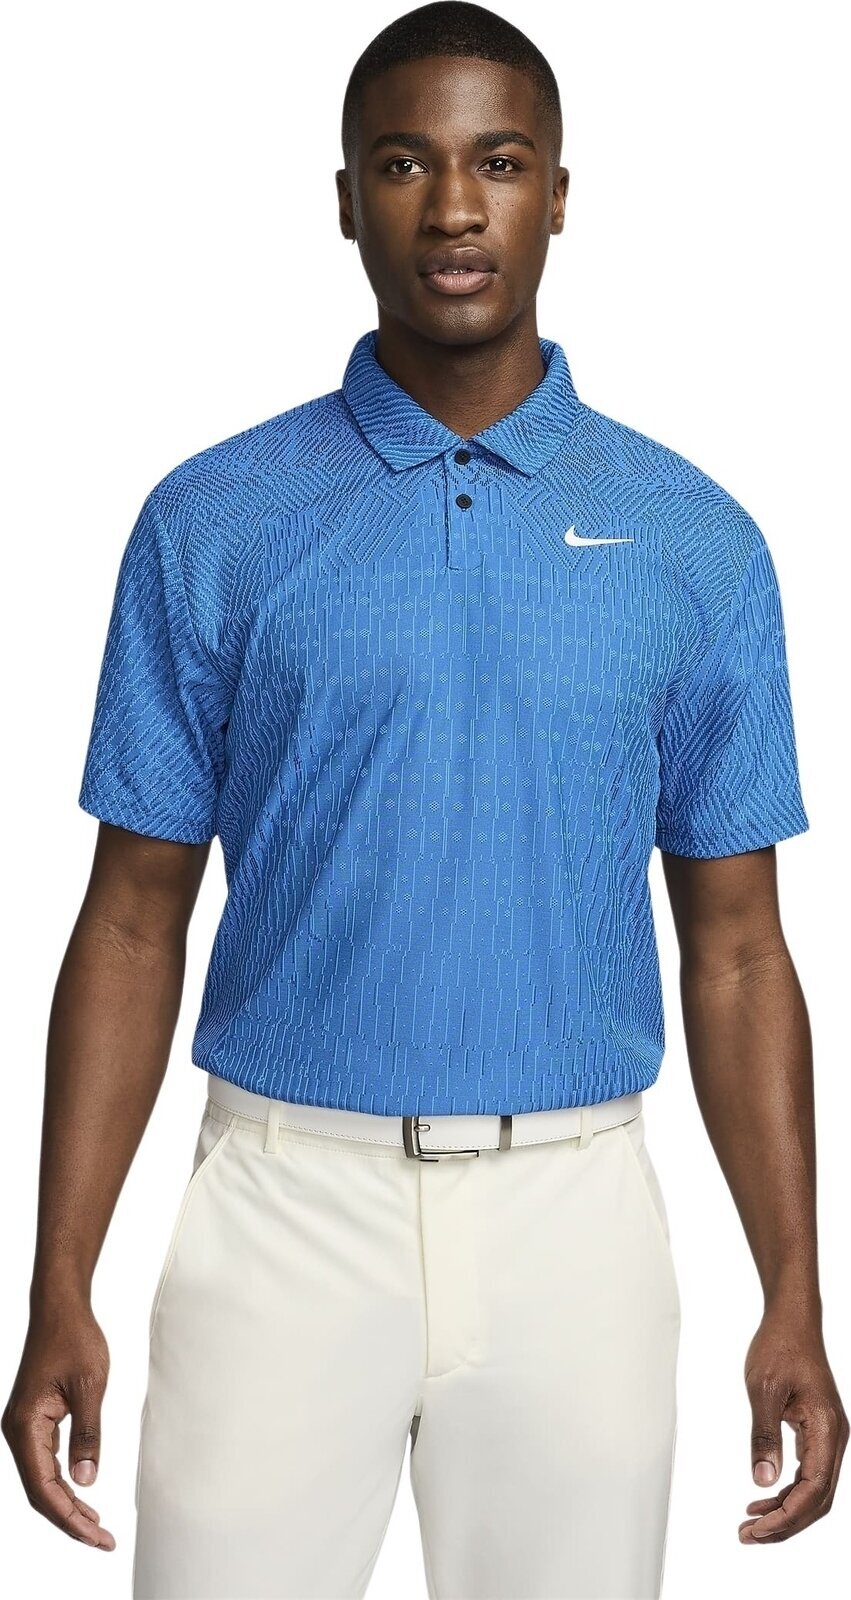 Koszulka Polo Nike Dri-Fit ADV Tour Mens Polo Light Photo Blue/Court Blue/White S